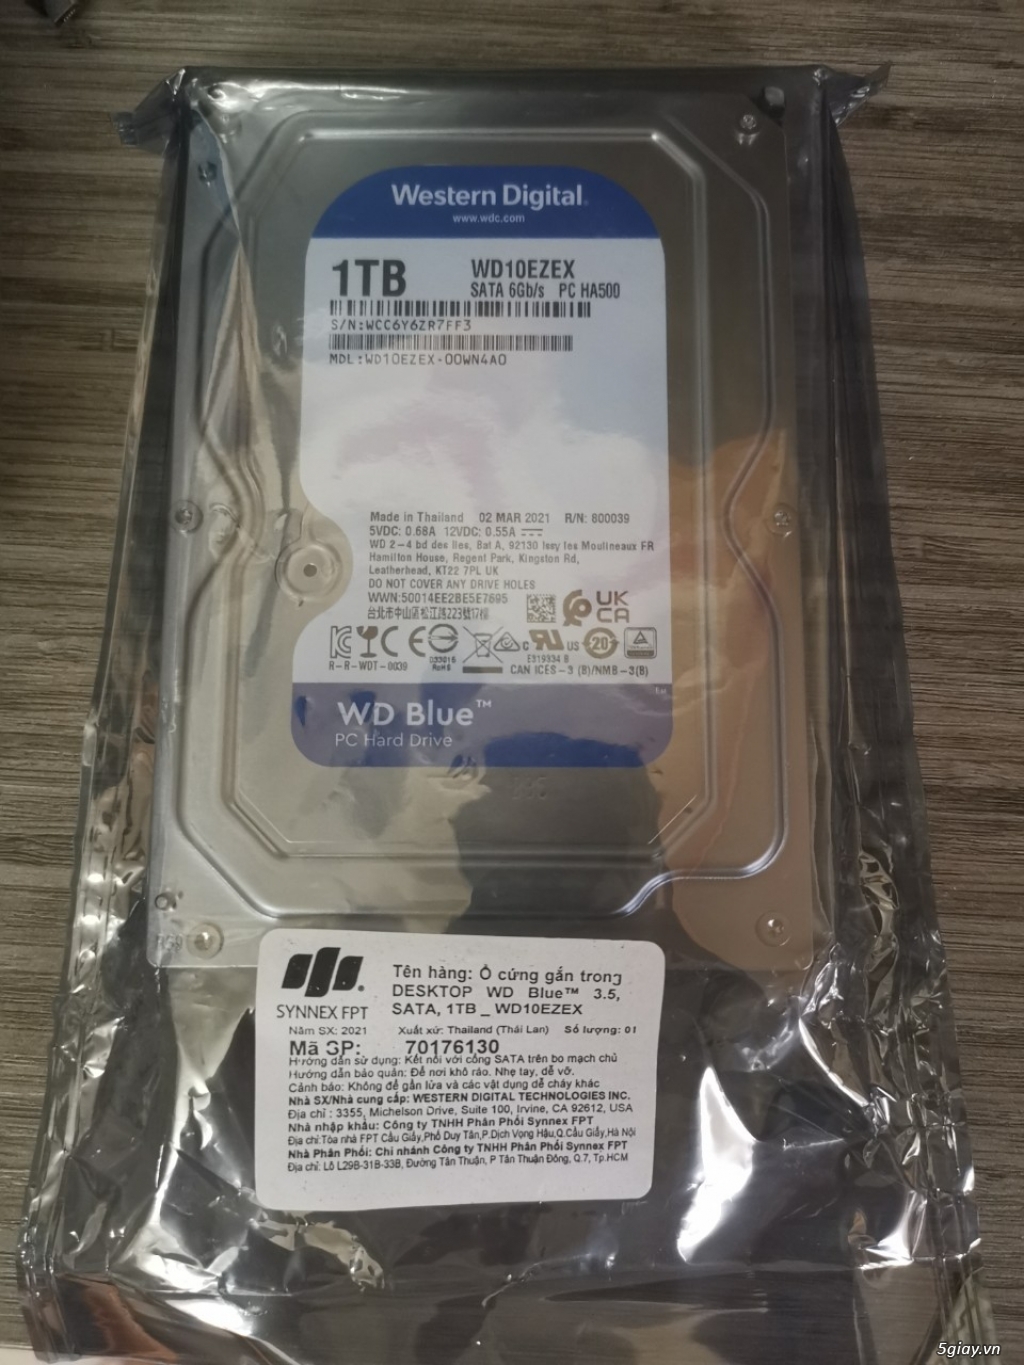 NEW 100% RẺ: SSD.M2 240G, RAM HYPER 8G 2666, POWER 500W ELI V3, HDD 1T - 1